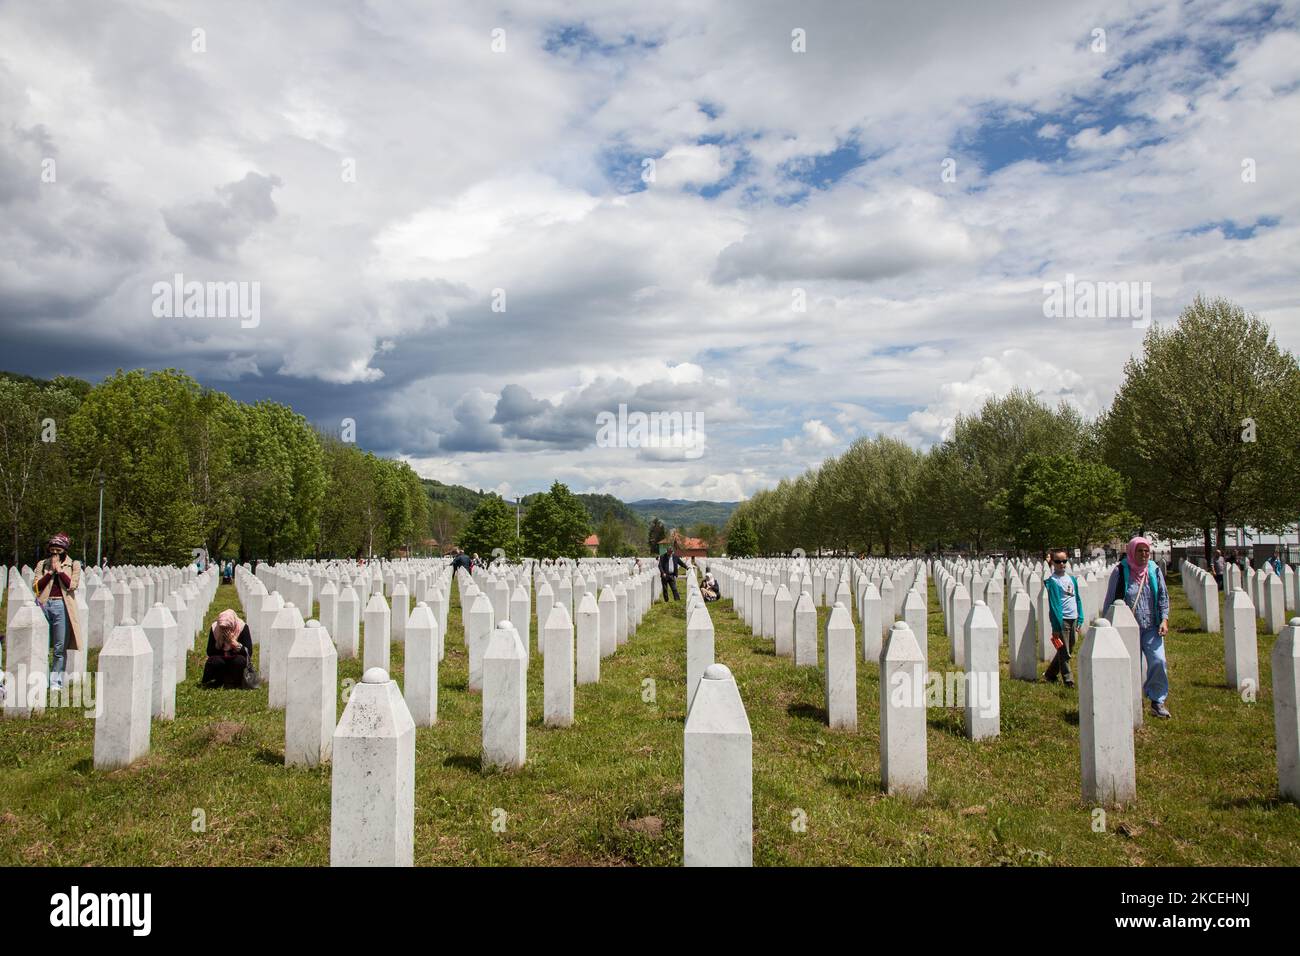 Eine bosnische Muslimin, Überlebende des Massakers von Srebrenica 1995, geht am 15. Mai 2021 auf dem Friedhof von Potocari, einem Dorf außerhalb von Srebrenica, Bosnien und Herzegowina, zwischen Grabsteinen. Shaleed, der Tag der Märtyrer in der muslimischen Tradition, wird am zweiten Tag nach dem Ramadan gefeiert. Das Potocari-Denkmal ist ein Treffpunkt für Tausende Bosniaken aus Srebrenica und dem ganzen Land, die kommen, um zu beten und ihren Lieben, die im Juli 1995 getötet wurden, Tribut zu zollen. (Foto von Jose Antonio Sanchez/NurPhoto) Stockfoto